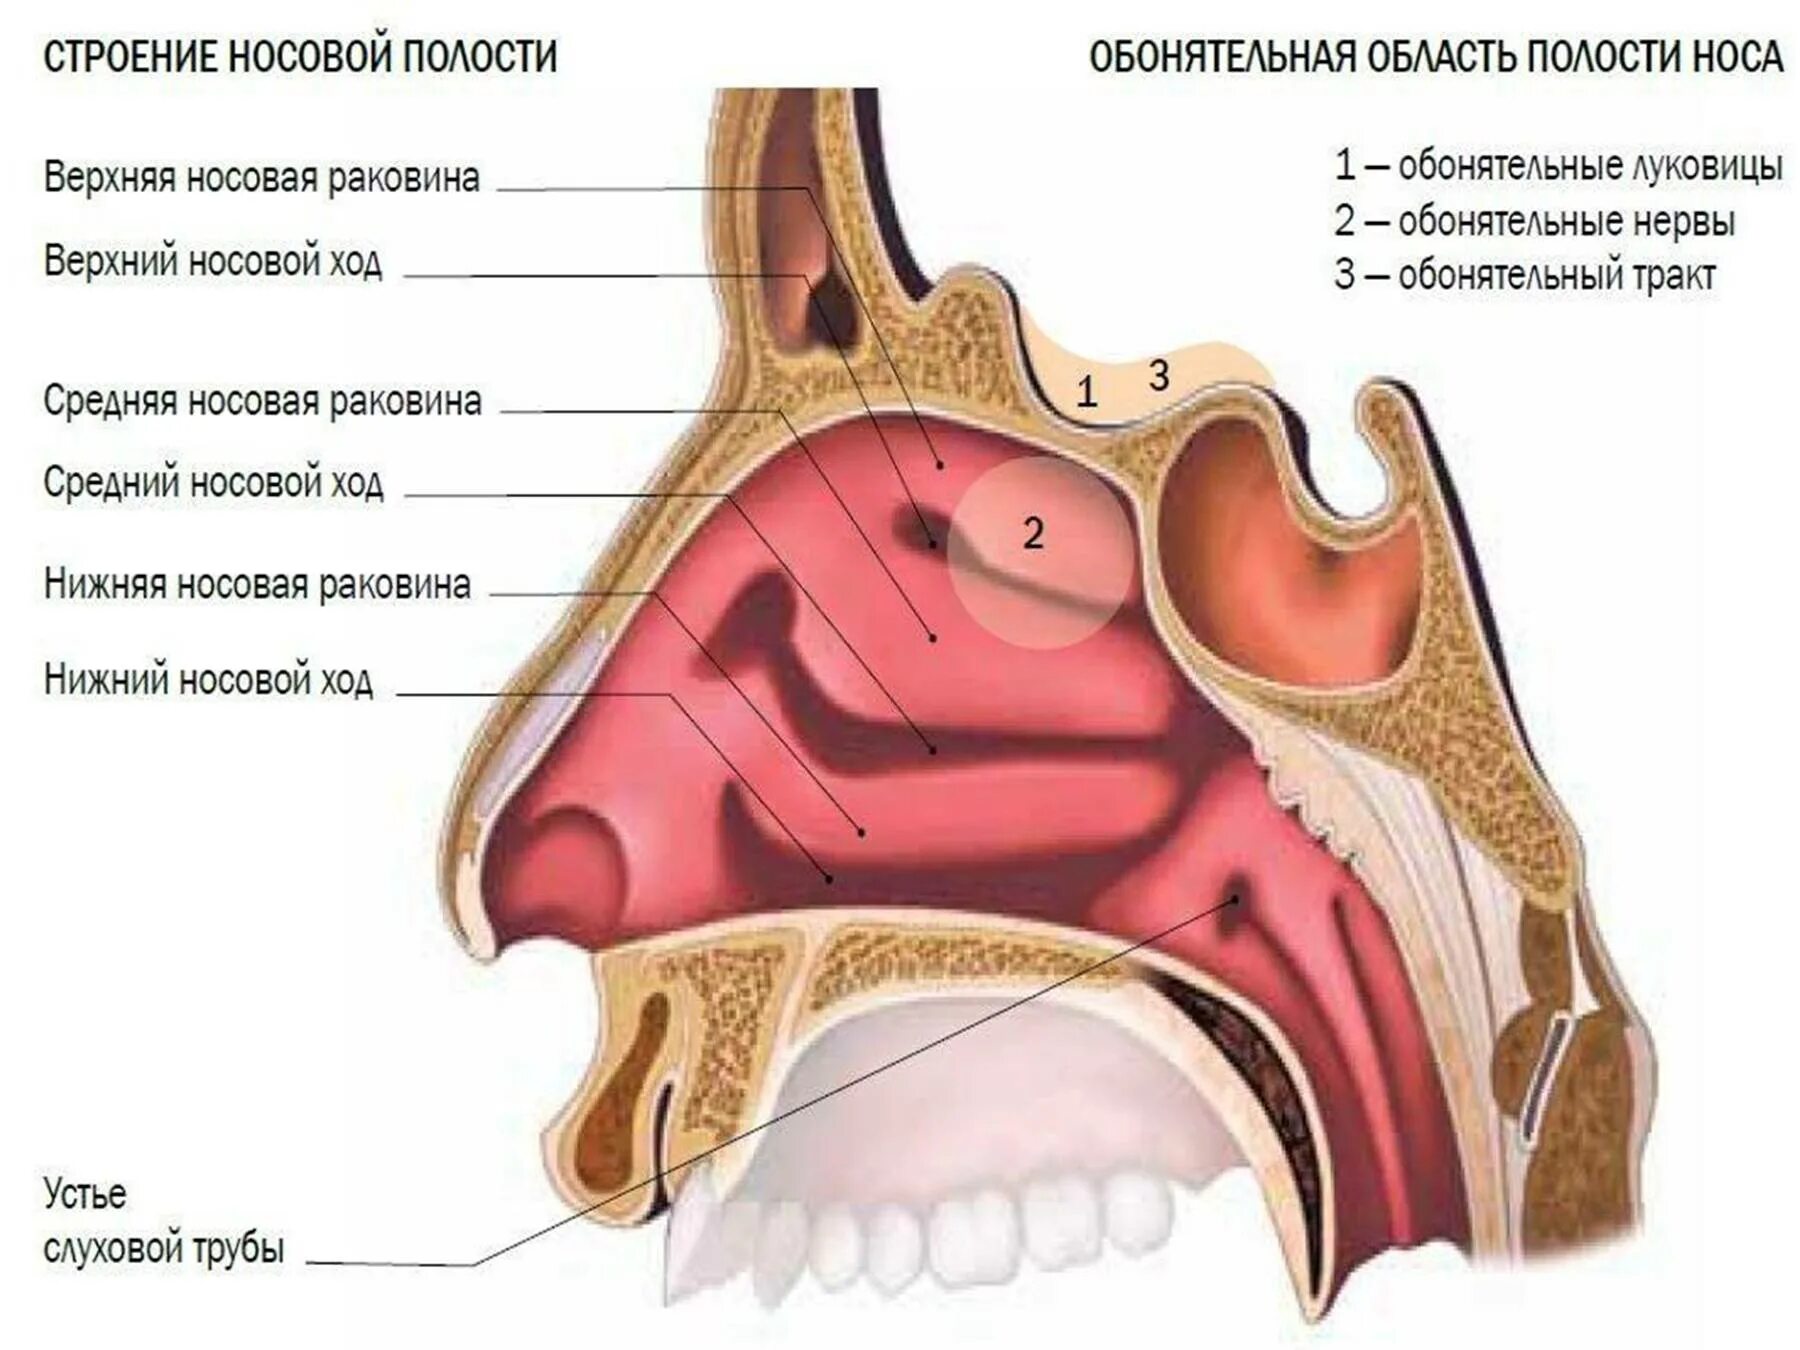 Обонятельная область носа. Носовые раковины и носовые ходы. Нос и полость носа анатомия. Носовая полость строение анатомия. Строение носа носовые раковины.